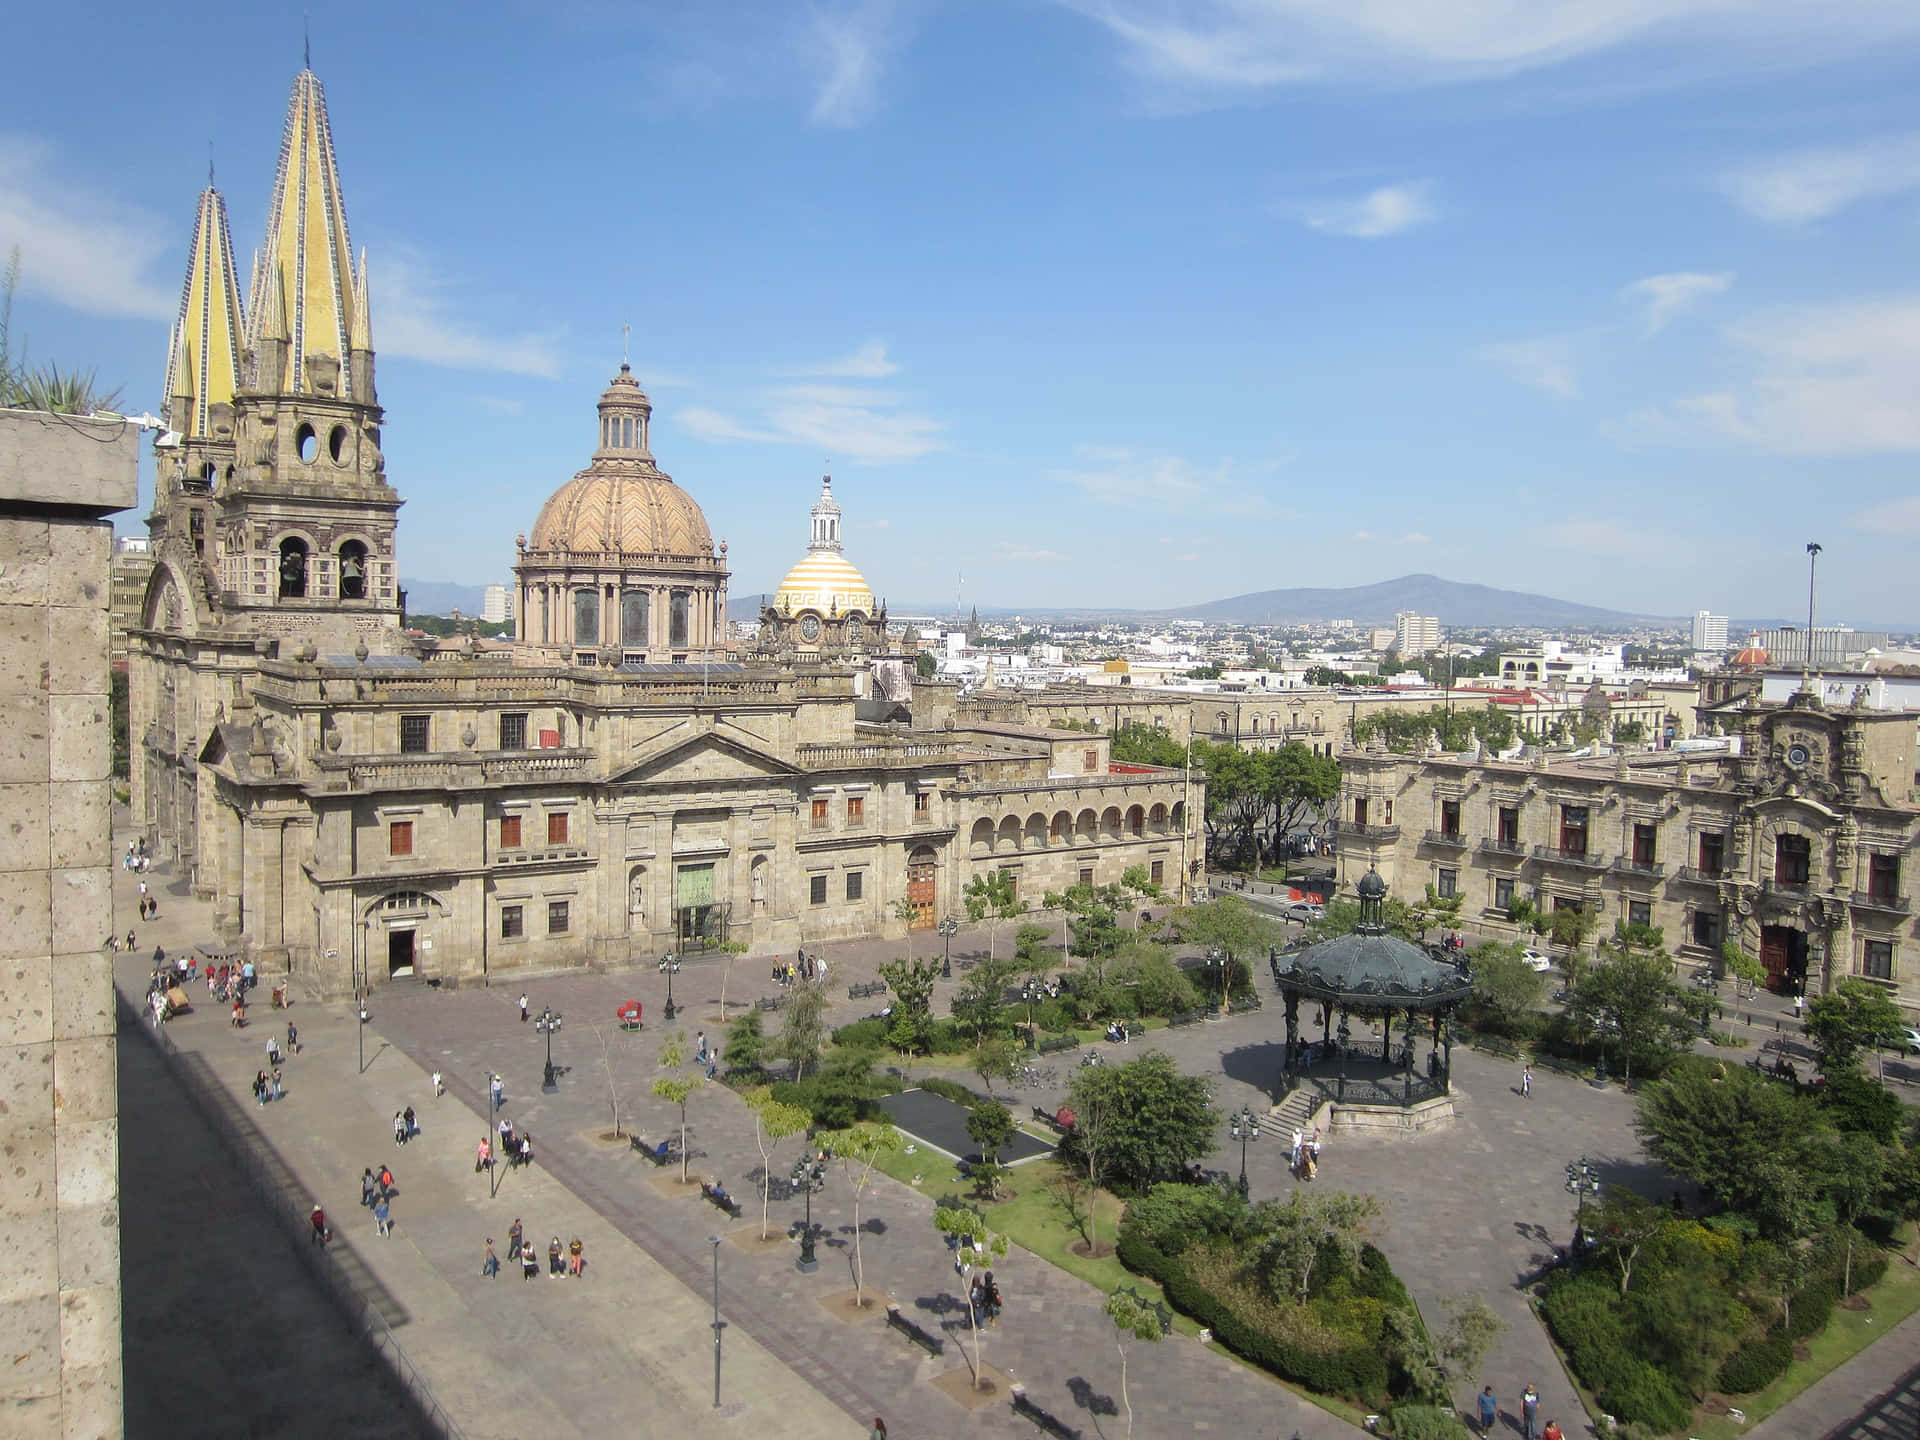 Puebla,mexiko - Eine Idyllische Stadt In Den Zentralen Hochländern.